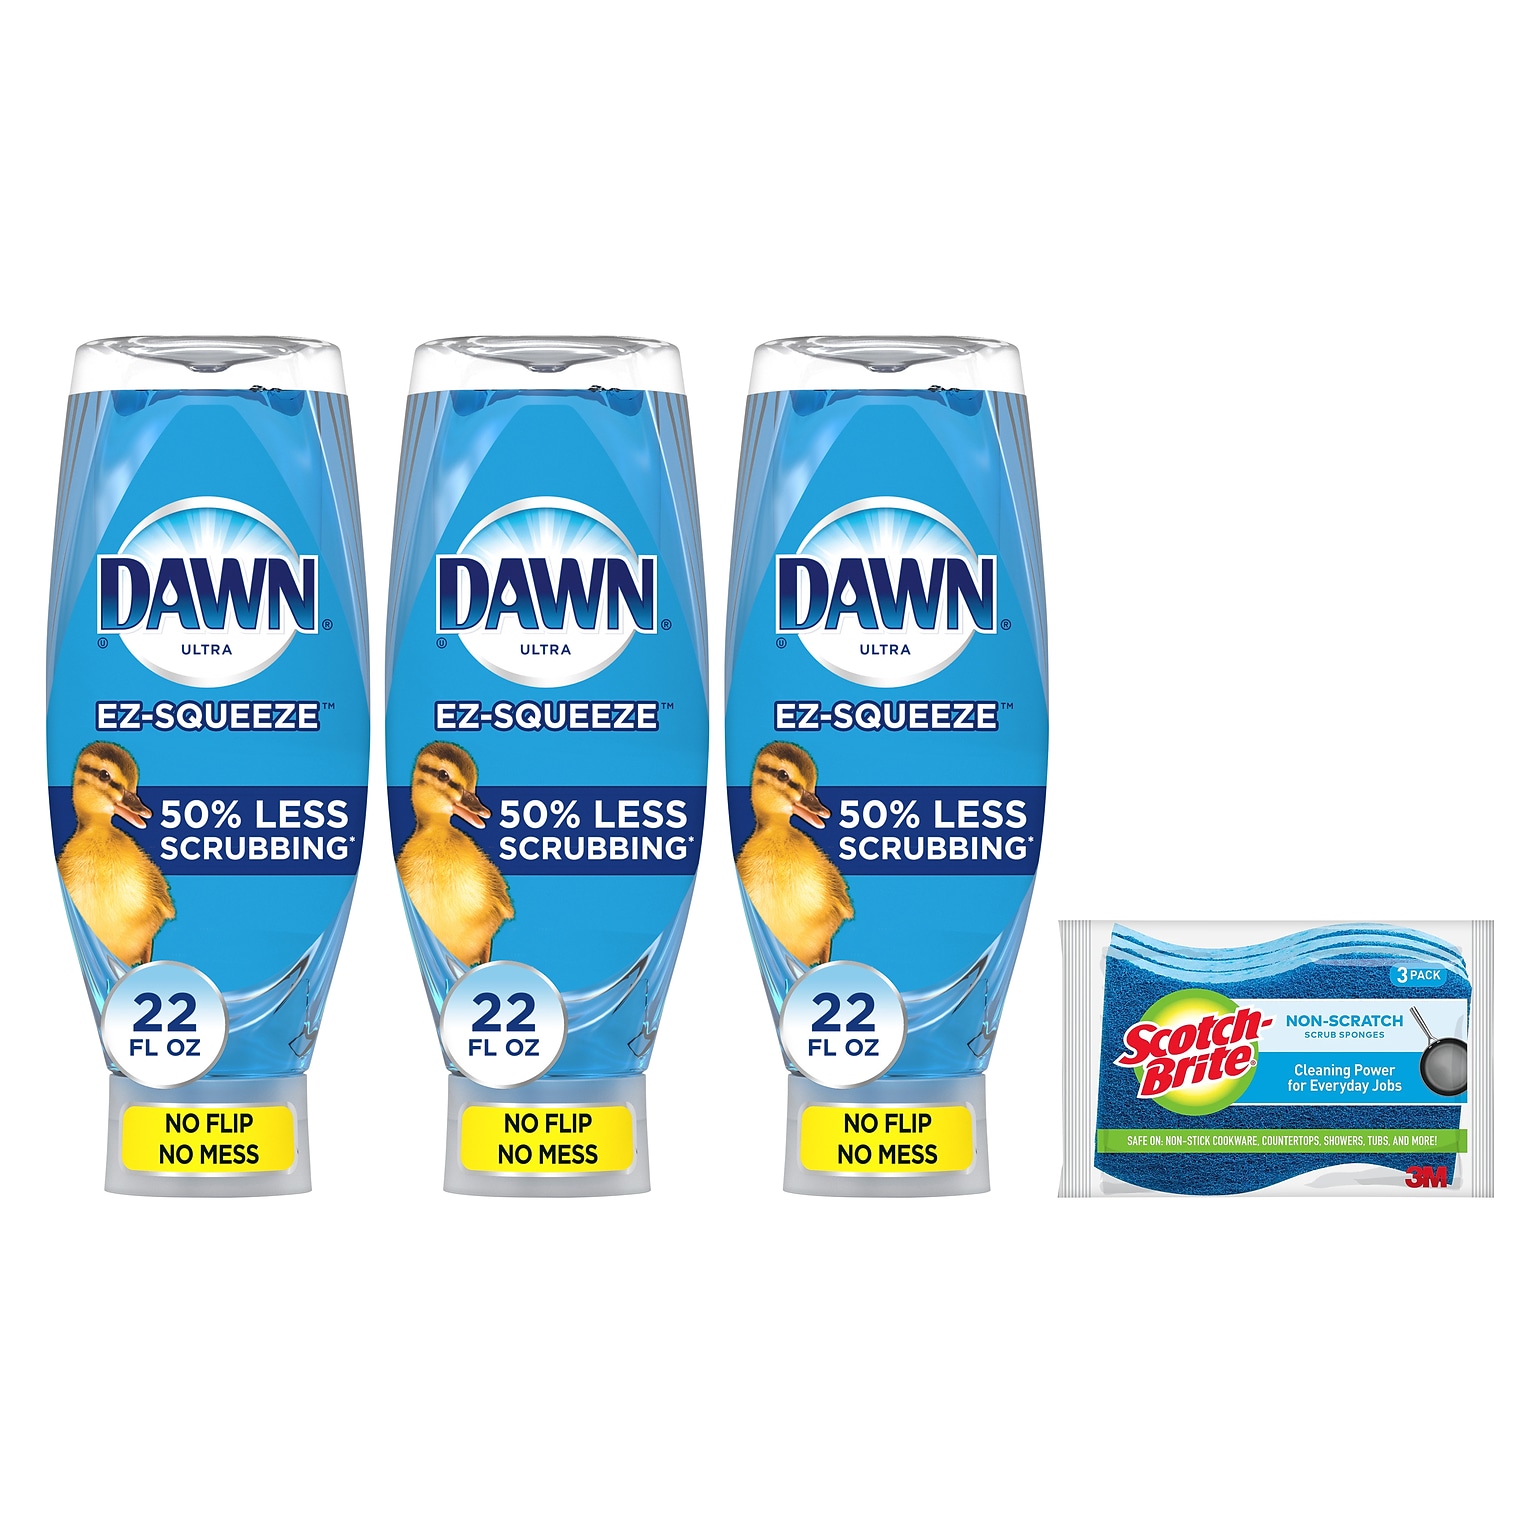 Dawn Ultra EZ-SQUEEZE Dish Soap, 22 oz, 3/Pack with Scotch-Brite Non-Scratch Scrub Sponge 3/Pack